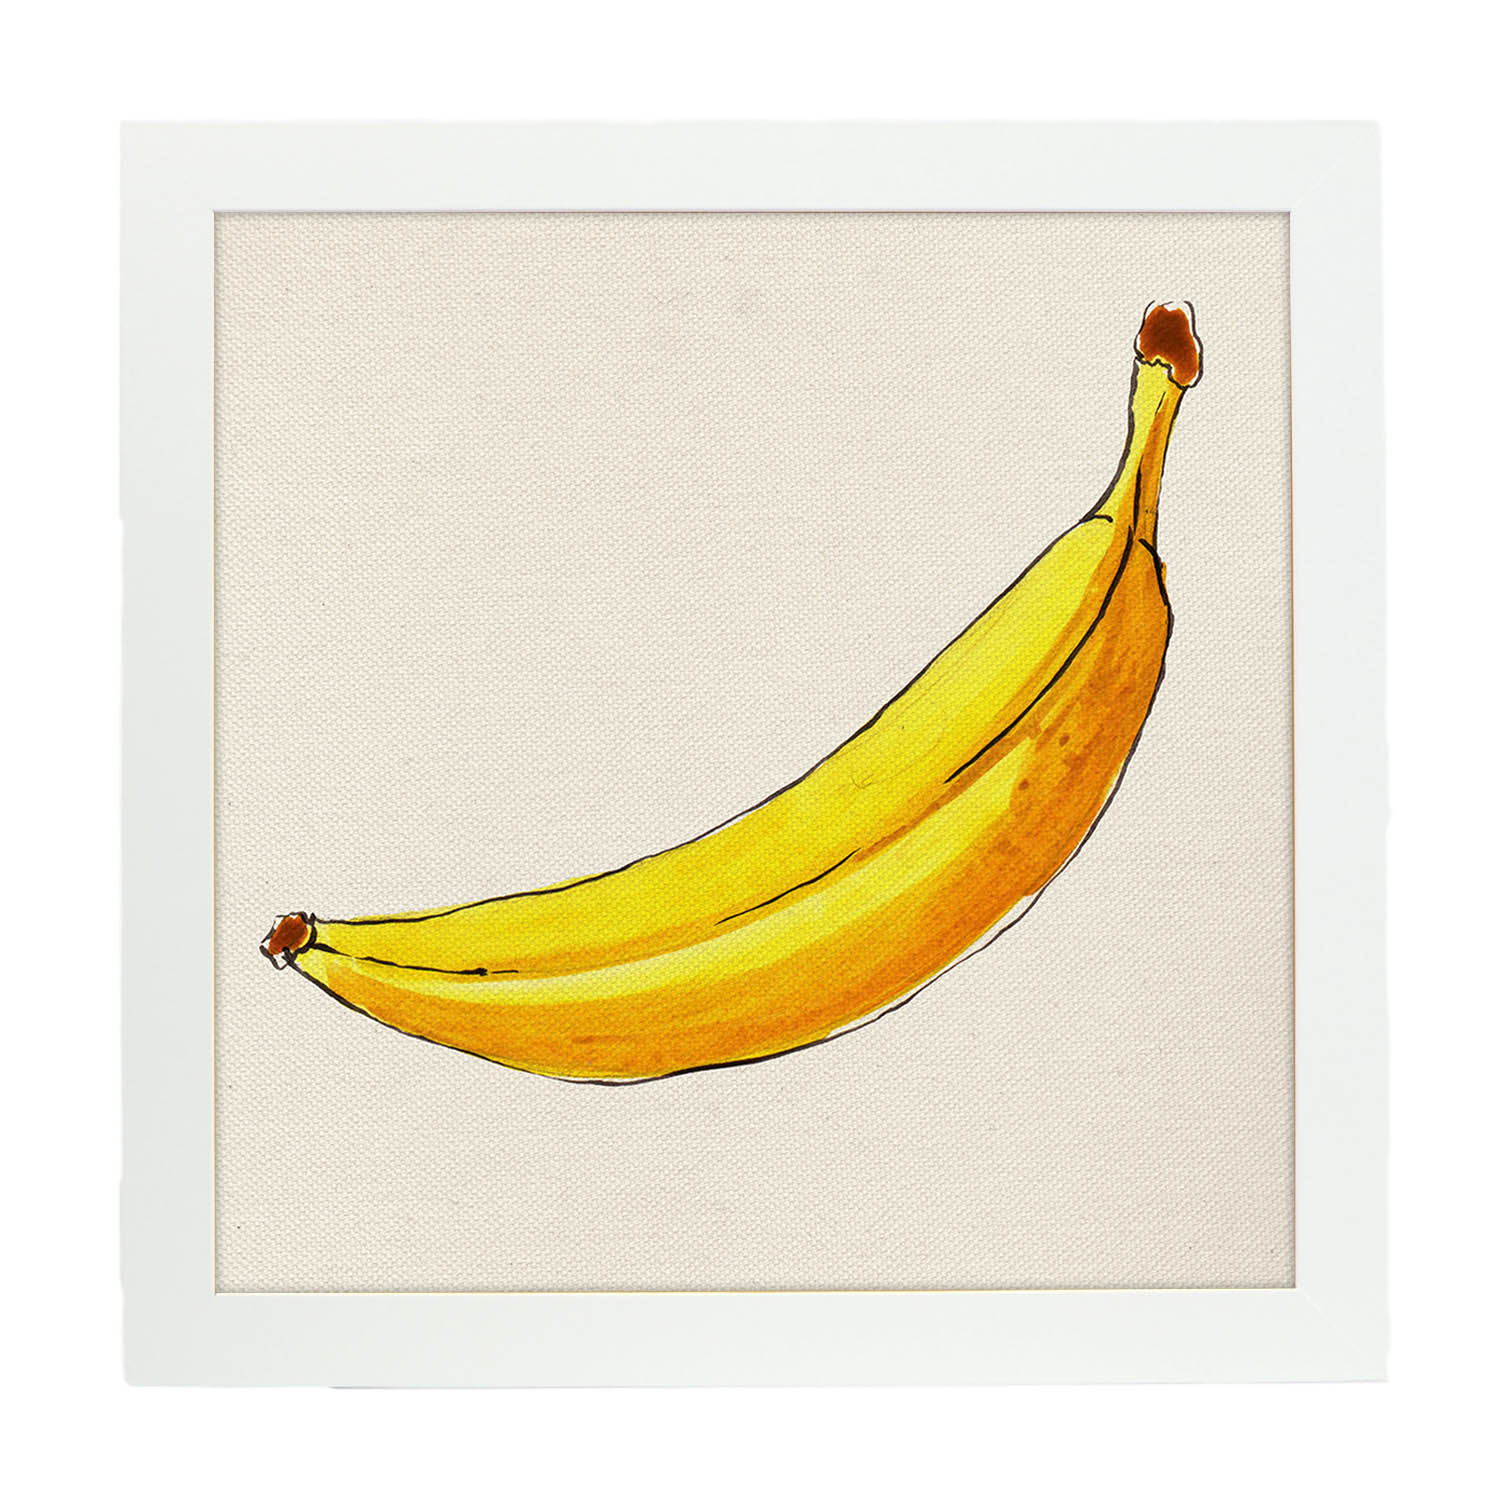 Poster cuadrado de Banana solitaria. Lámina de frutas y verduras de forma cuadrada, ilustrada con dibujos a color.-Artwork-Nacnic-25x25 cm-Marco Blanco-Nacnic Estudio SL